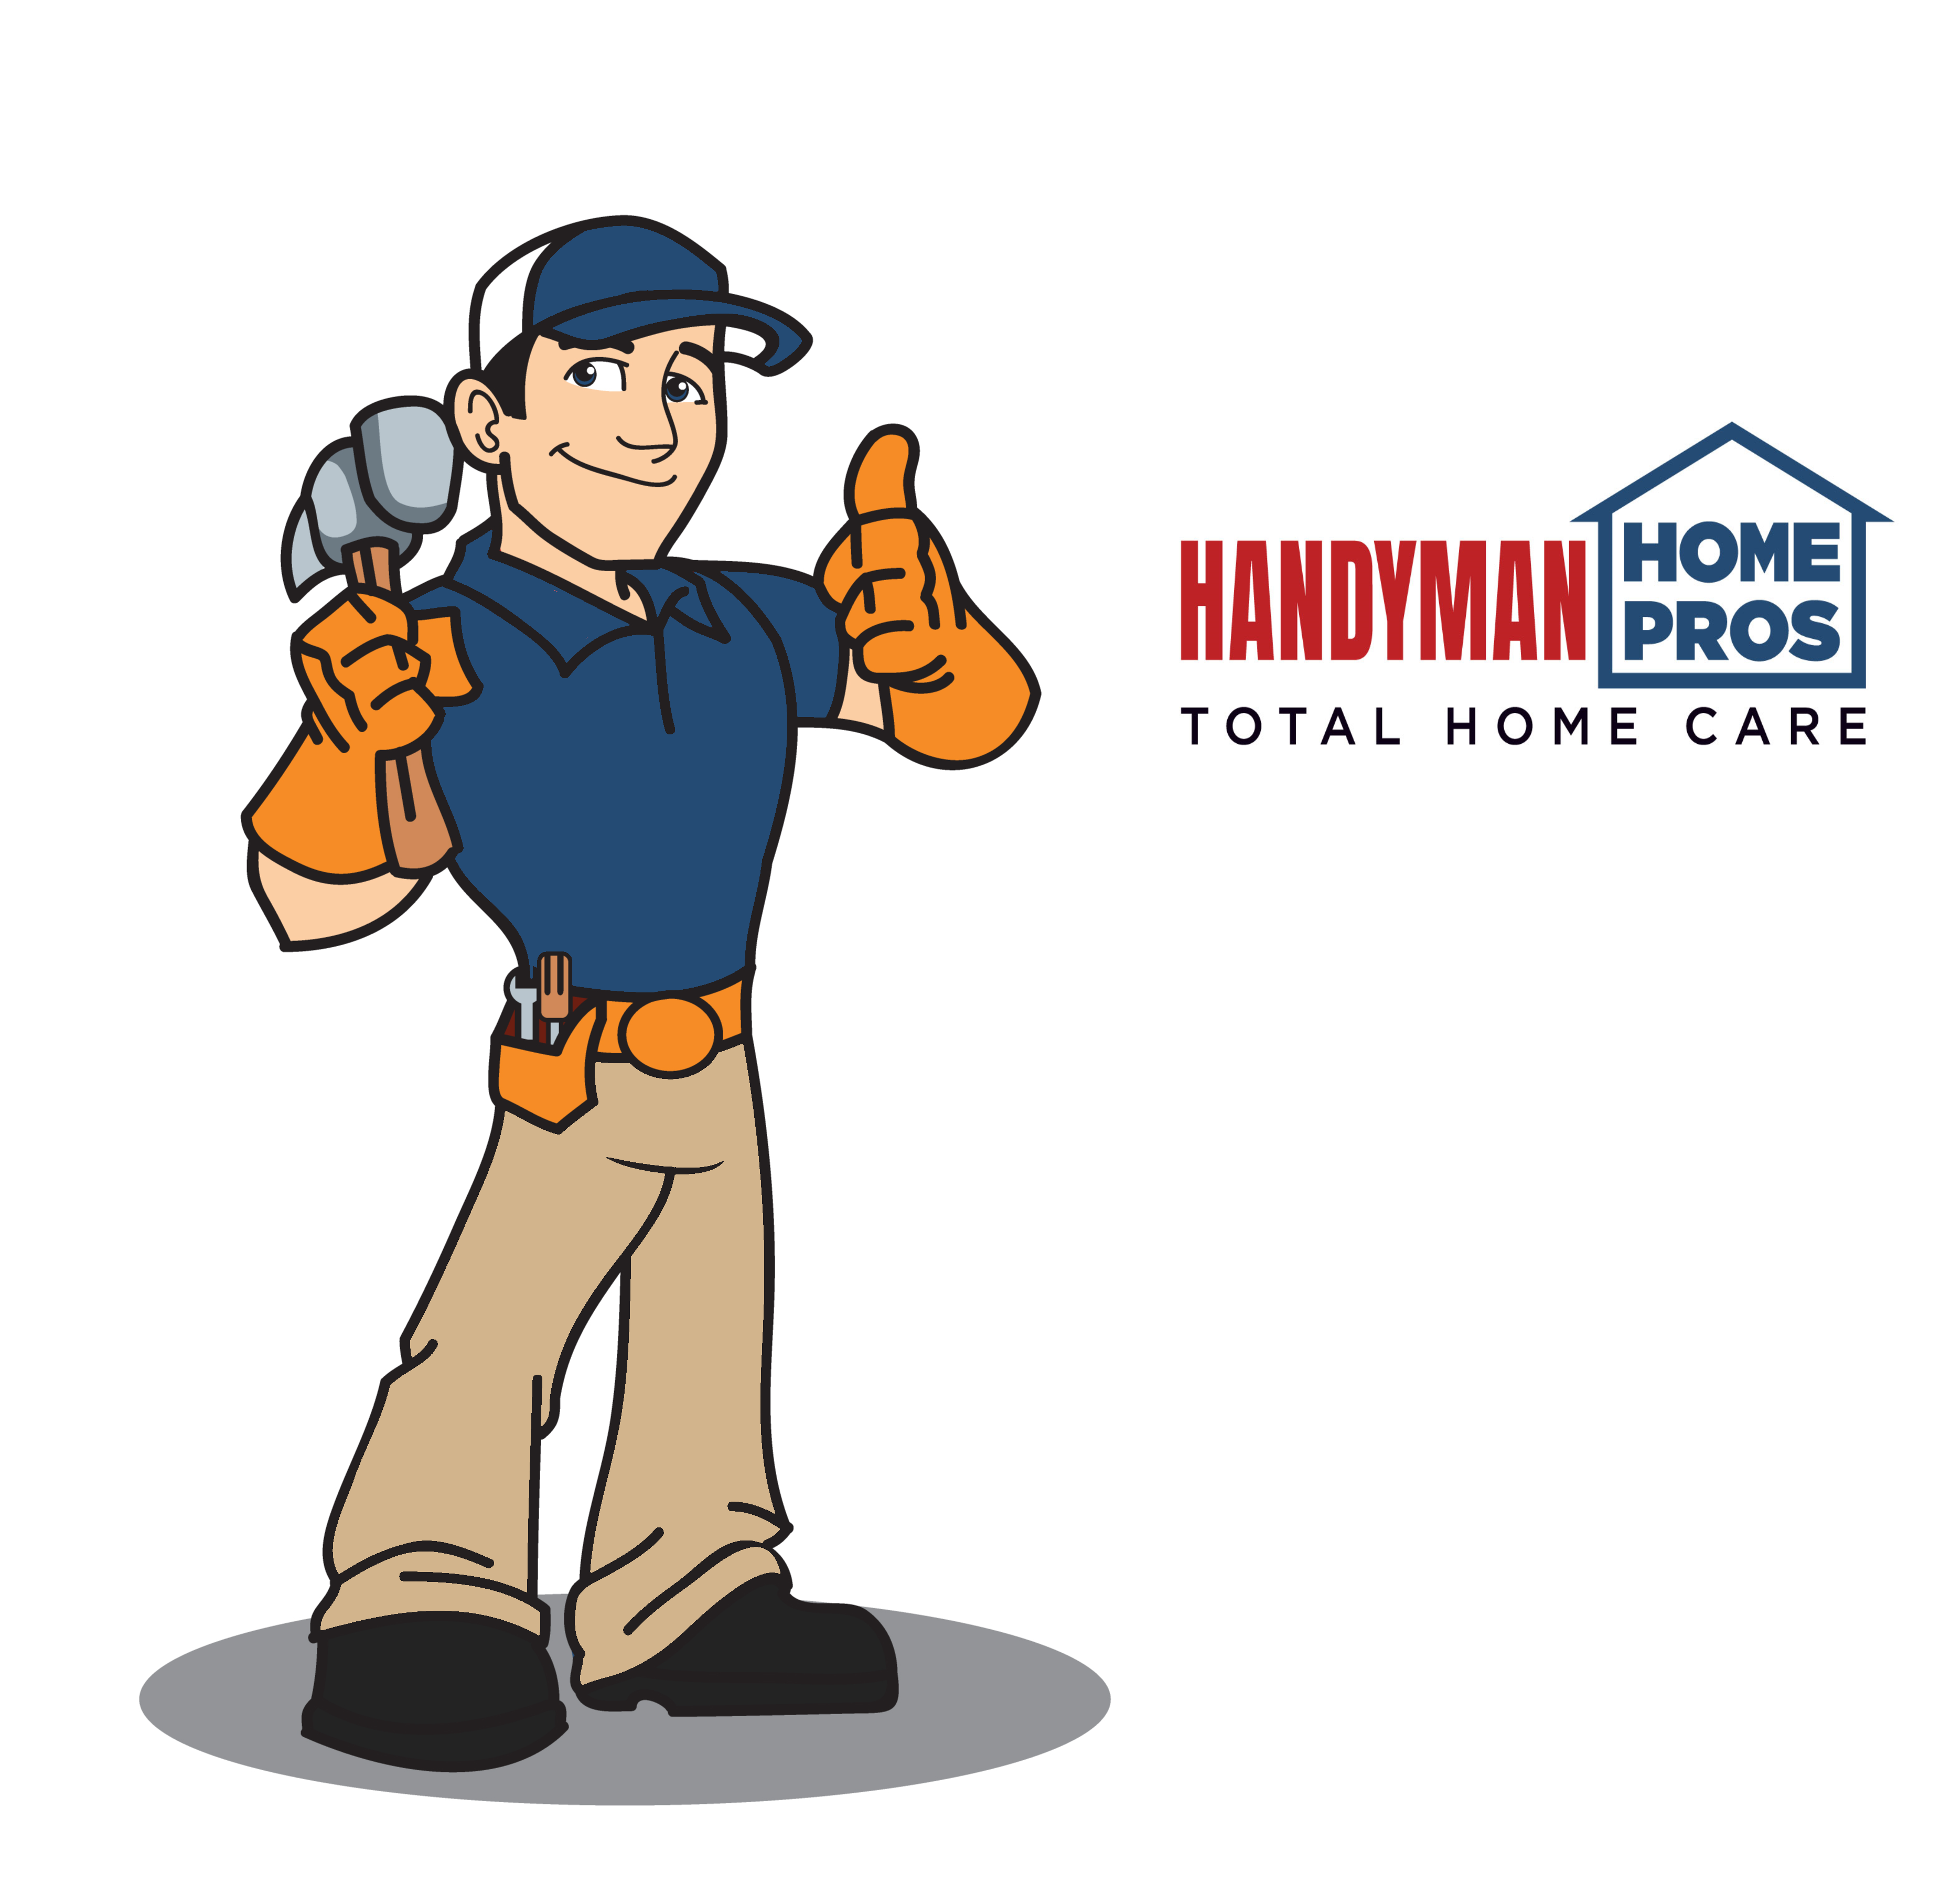 Handyman Home Pros Total Home Care Logo